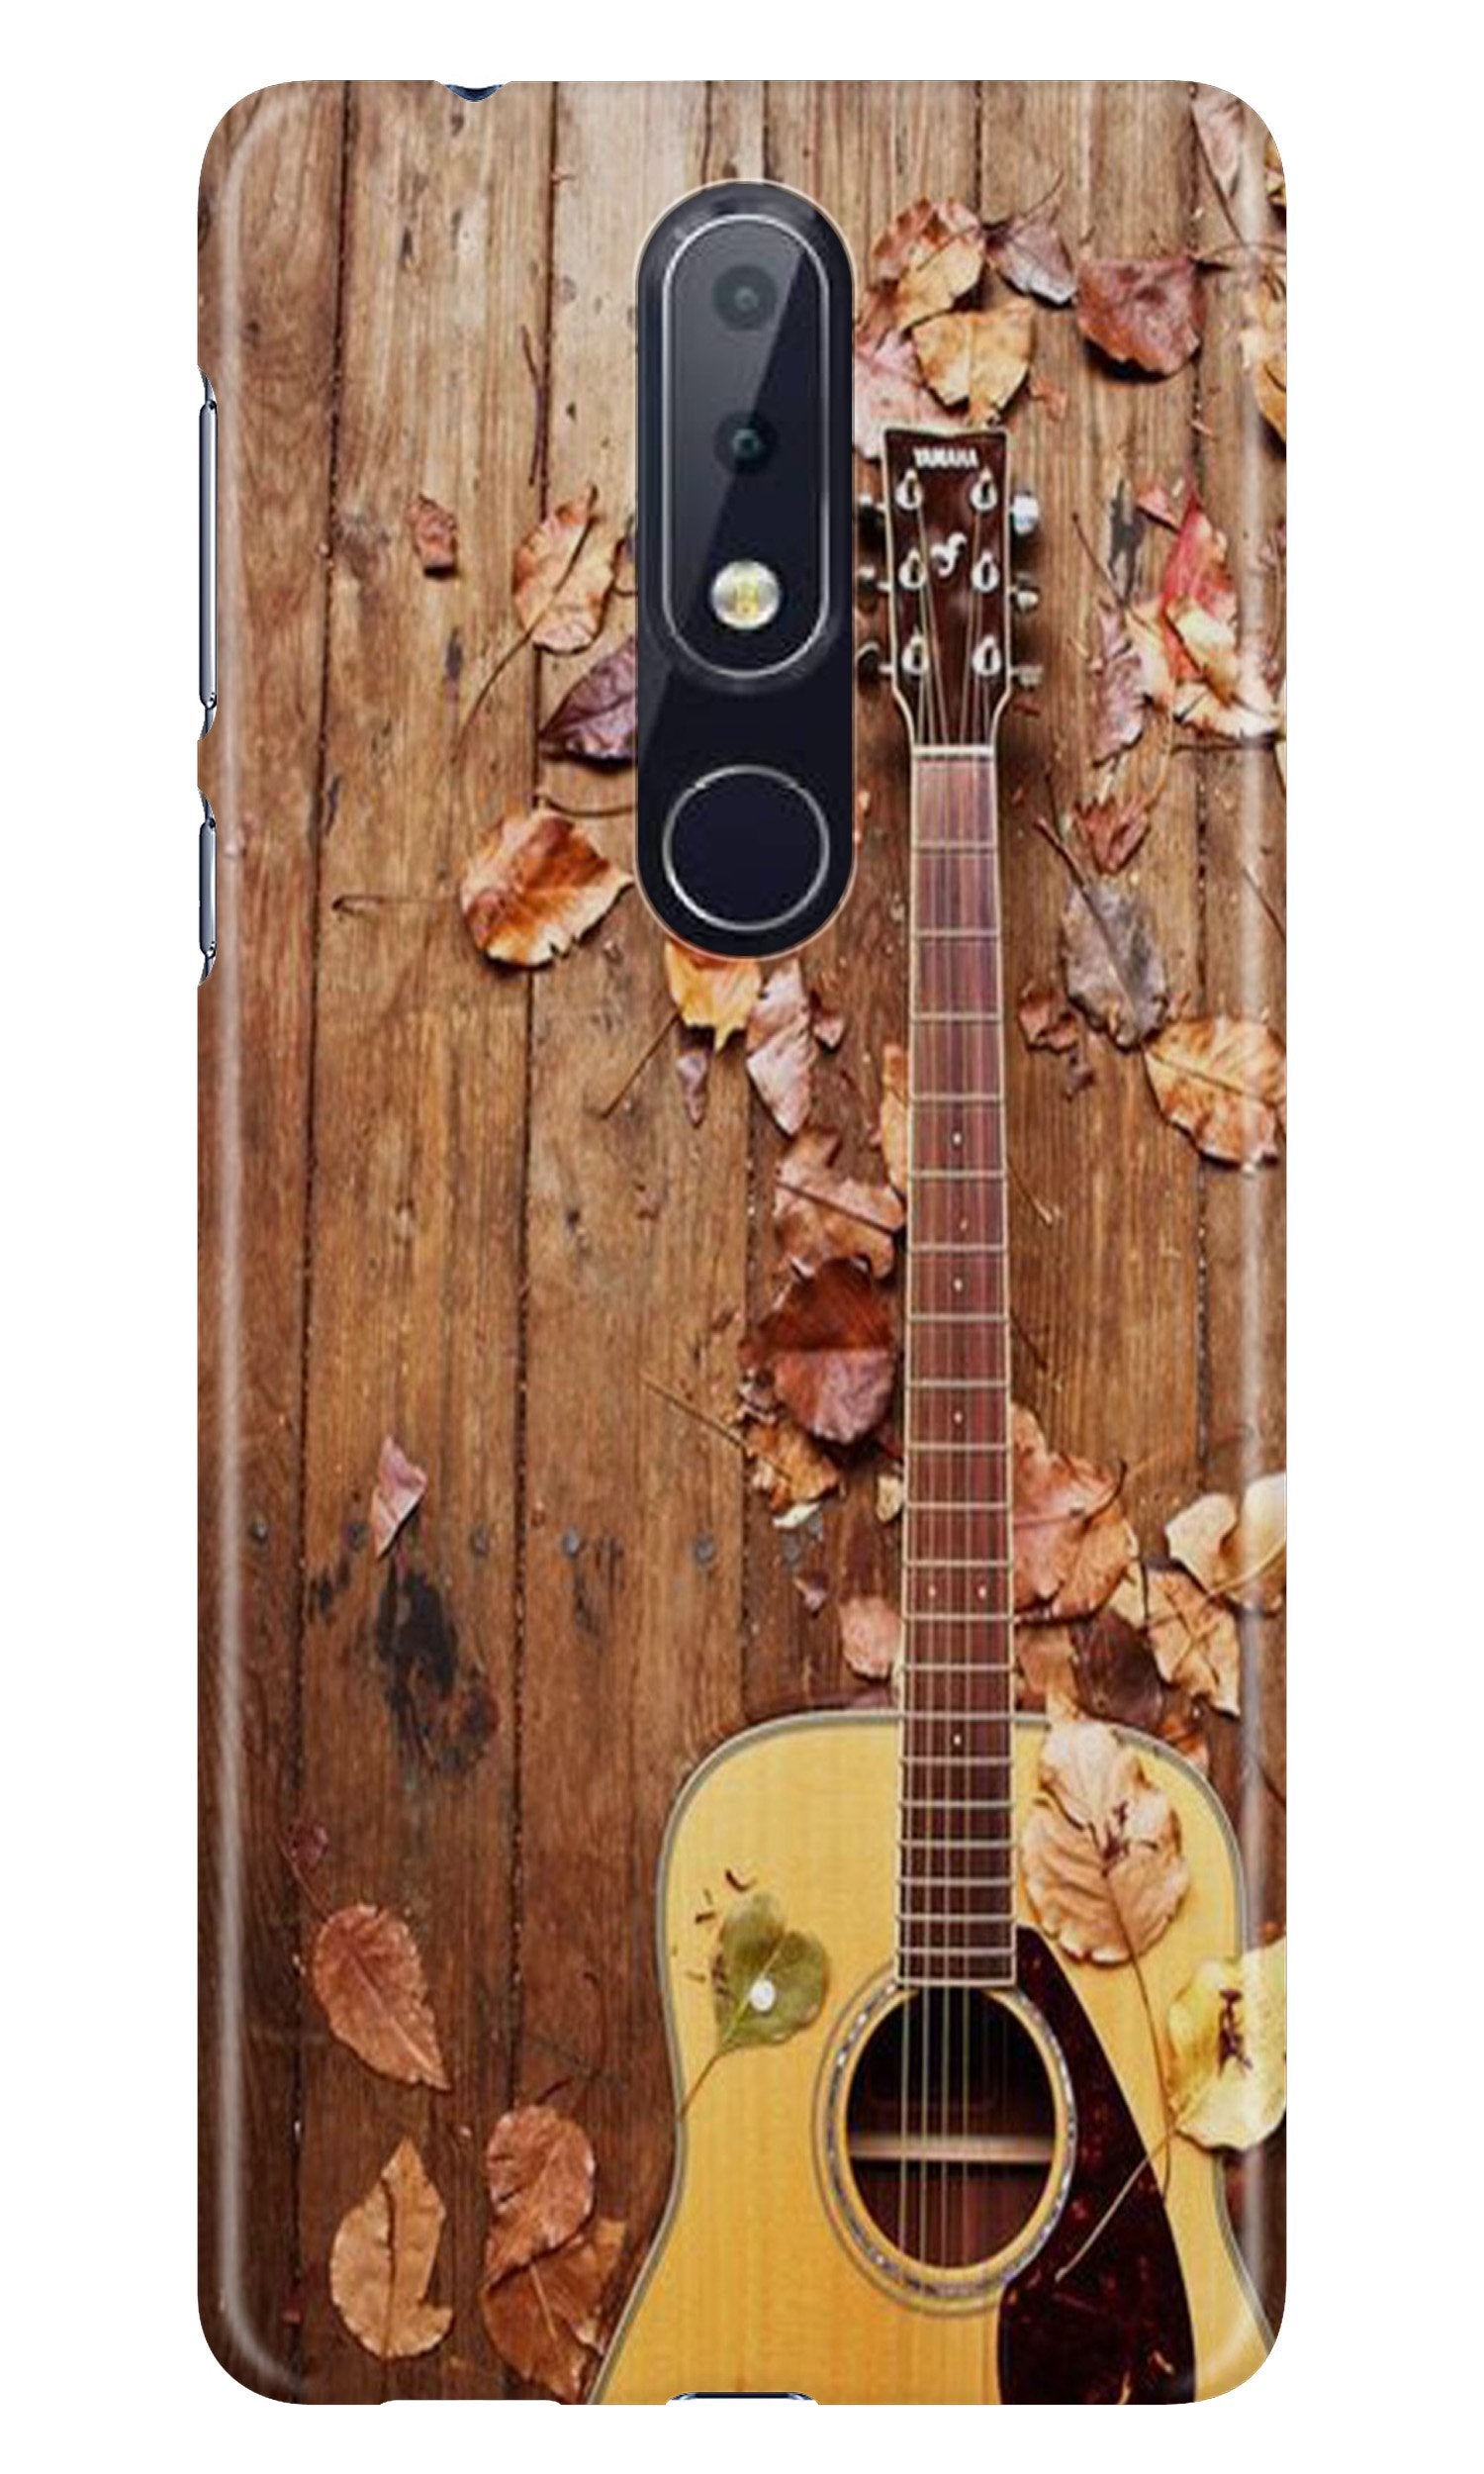 Guitar Case for Nokia 6.1 Plus